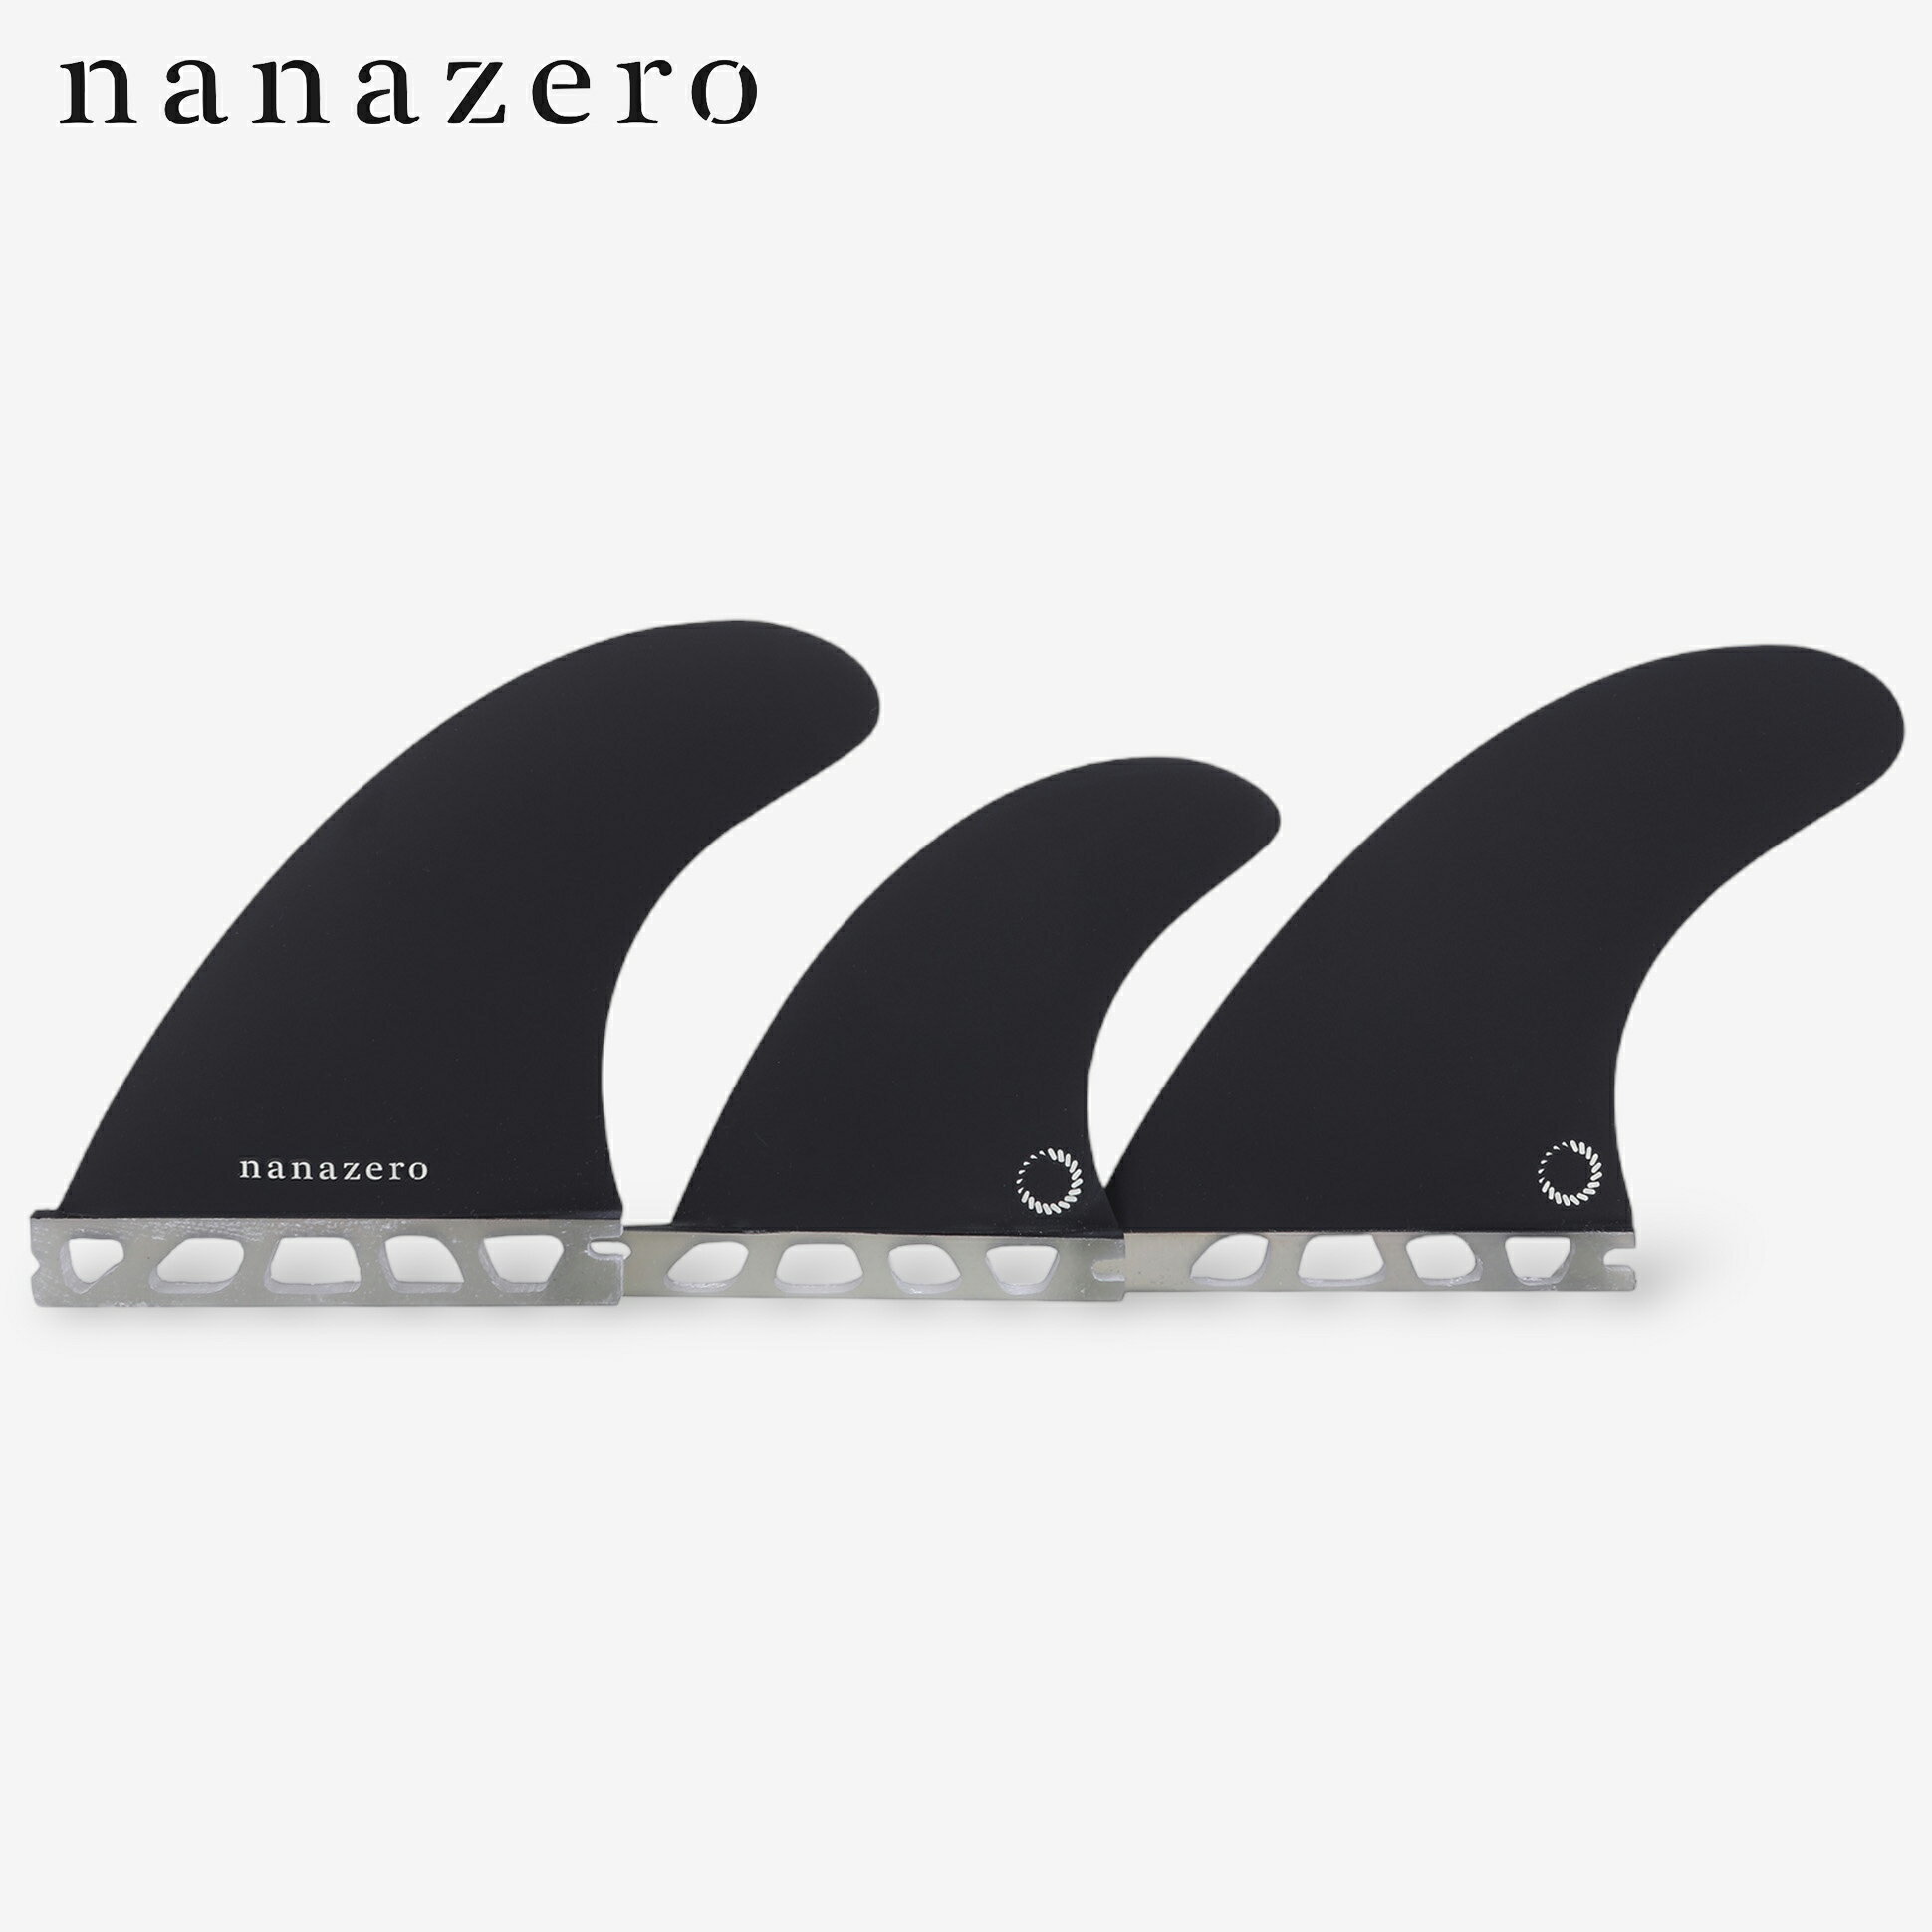 nanazero Honeycomb(ハニカム) 5フィン セット シングルタブ (サーフィン サーフボード用)